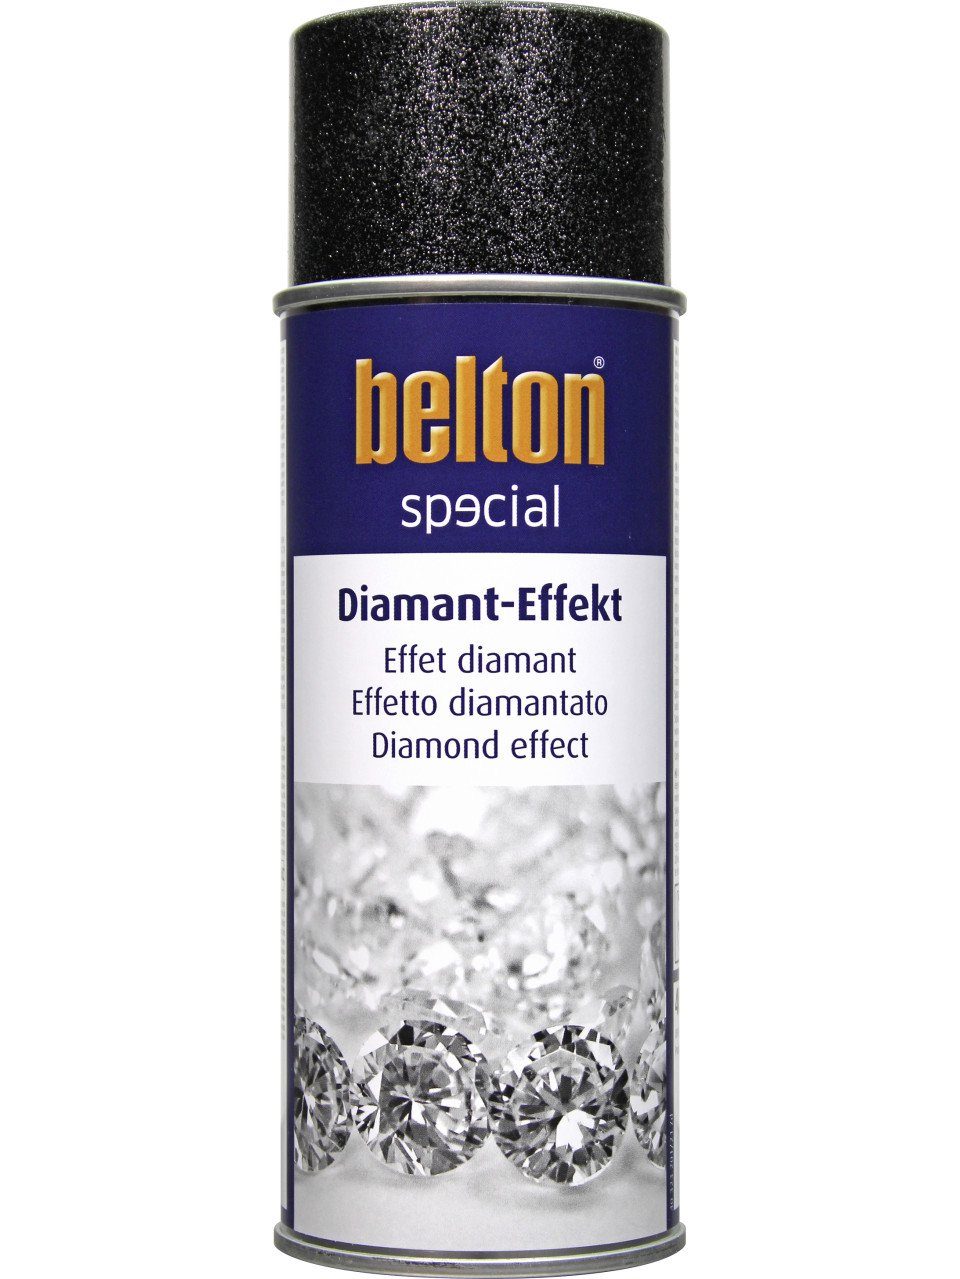 Diamant-Effekt silber 400 Belton belton Lack special Spray ml